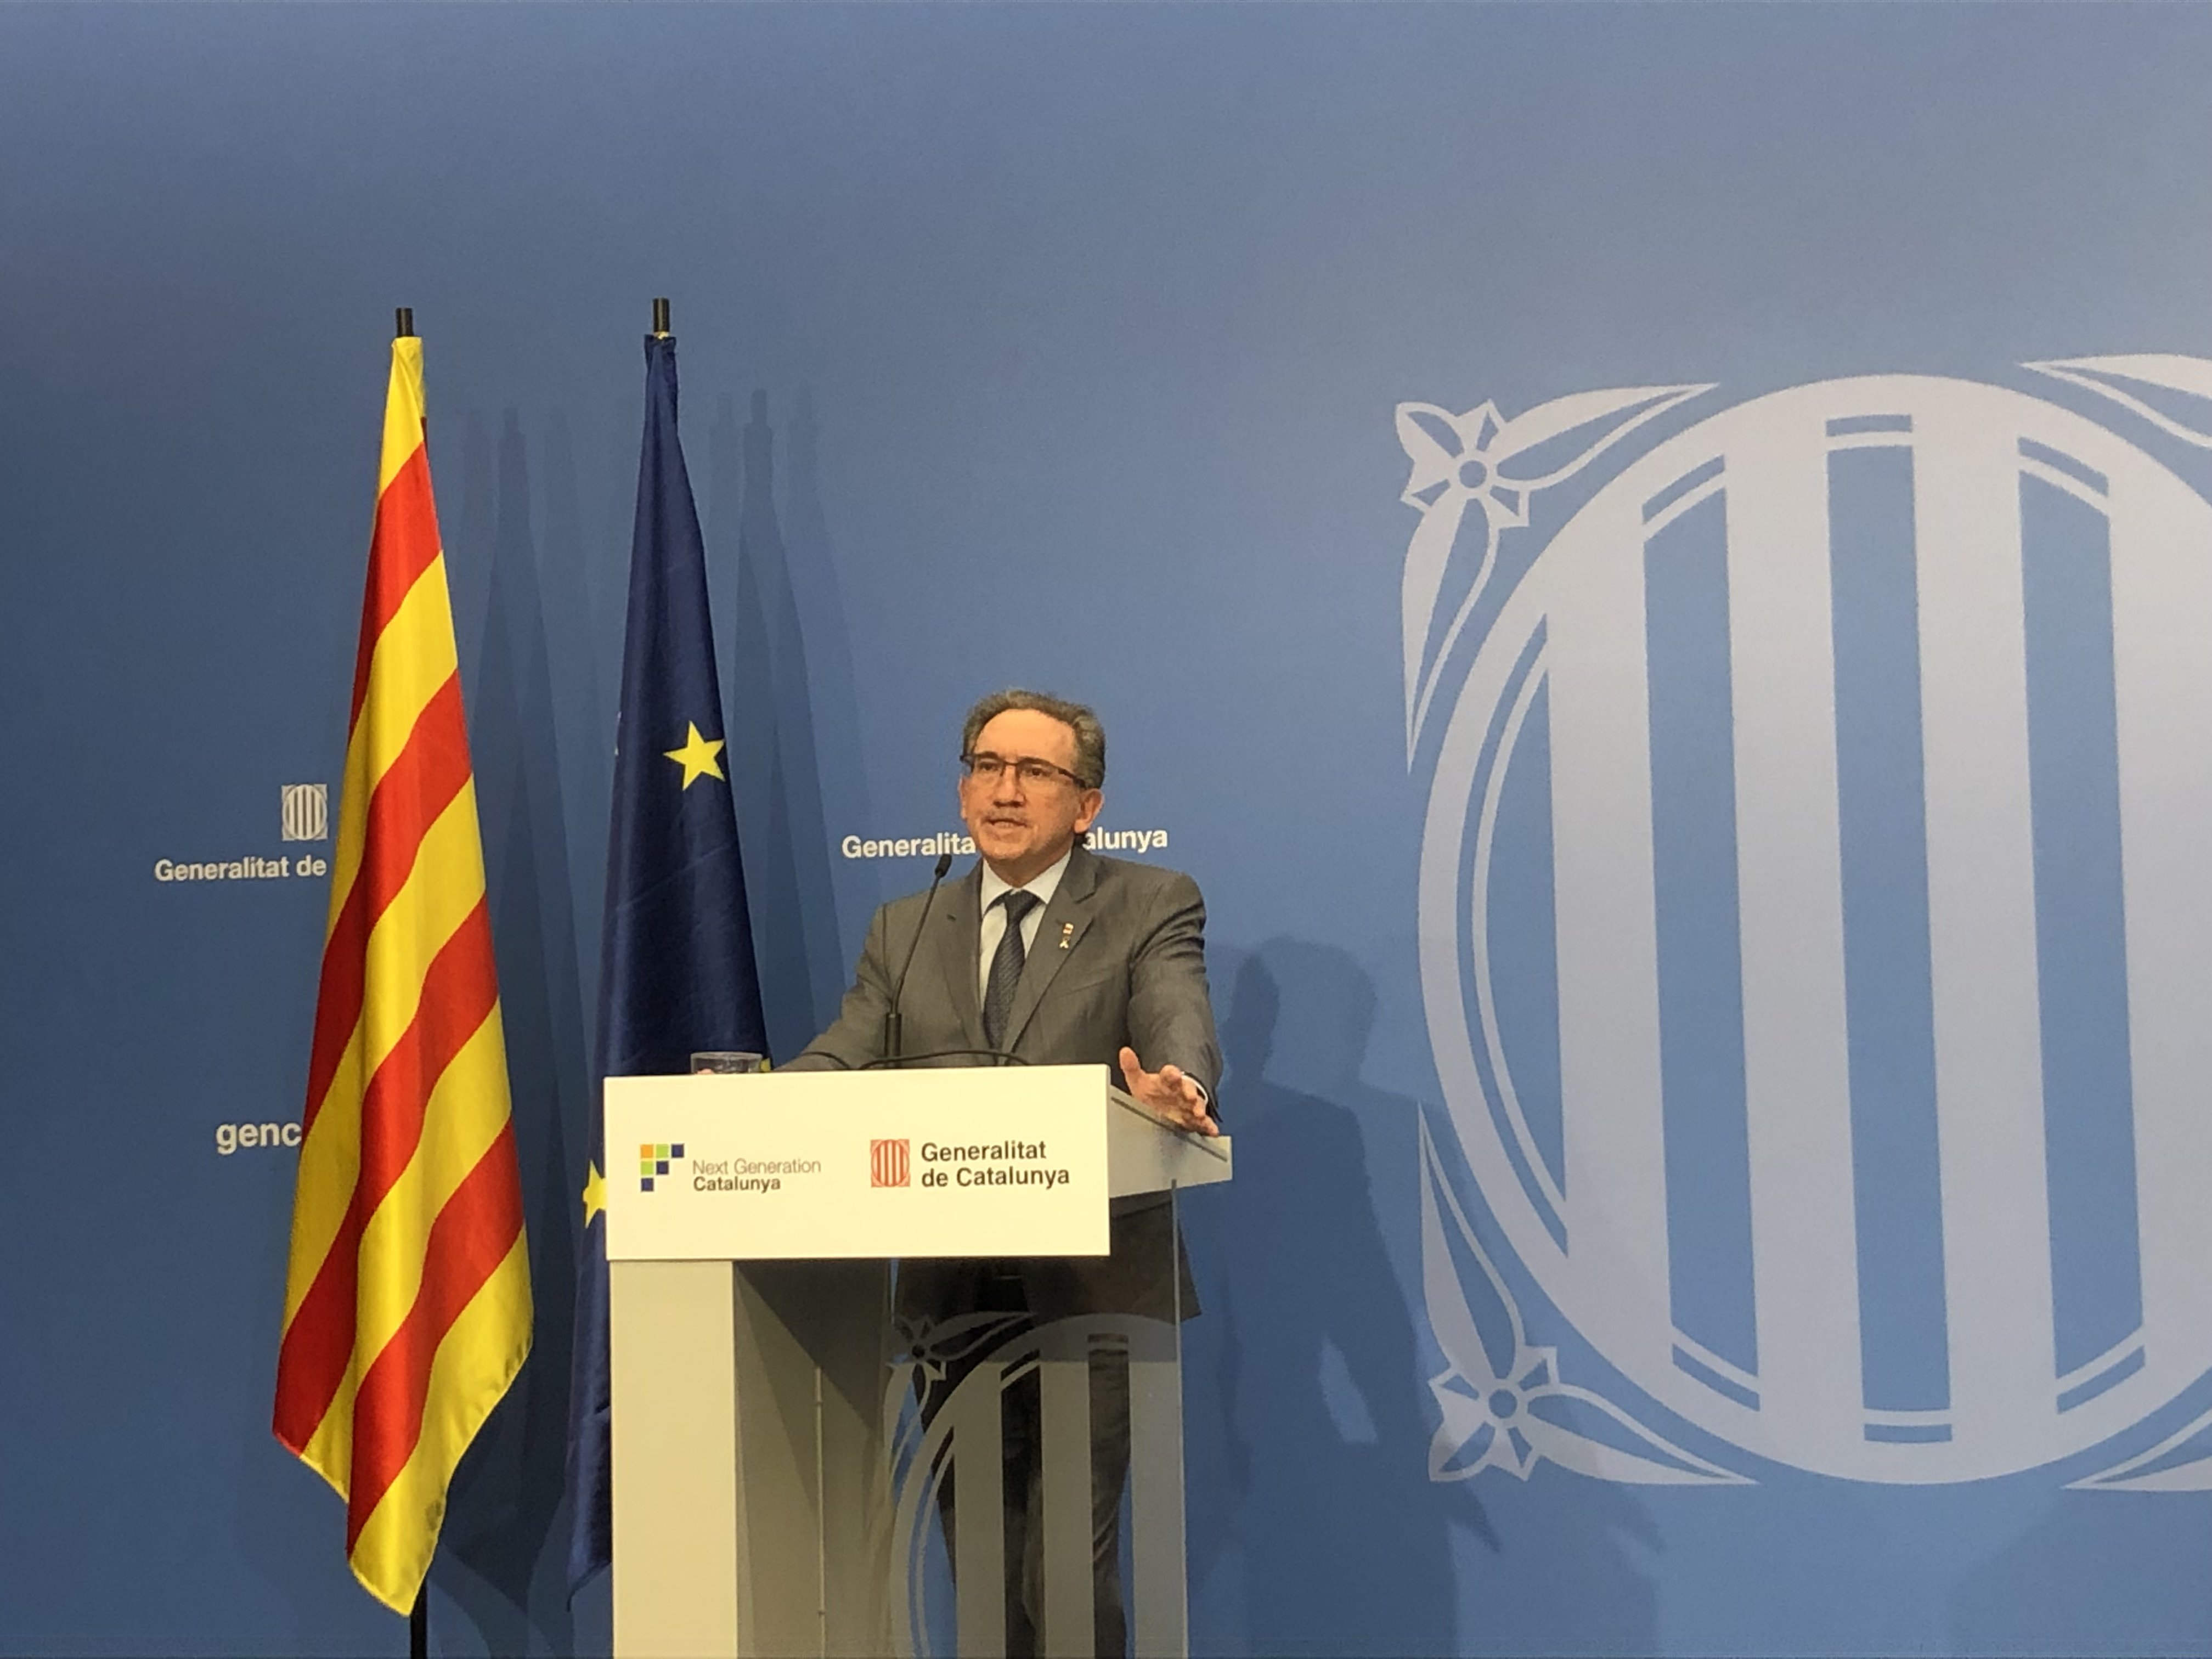 Giró calcula que los Next Generation pueden incrementar el PIB catalán en 5 puntos